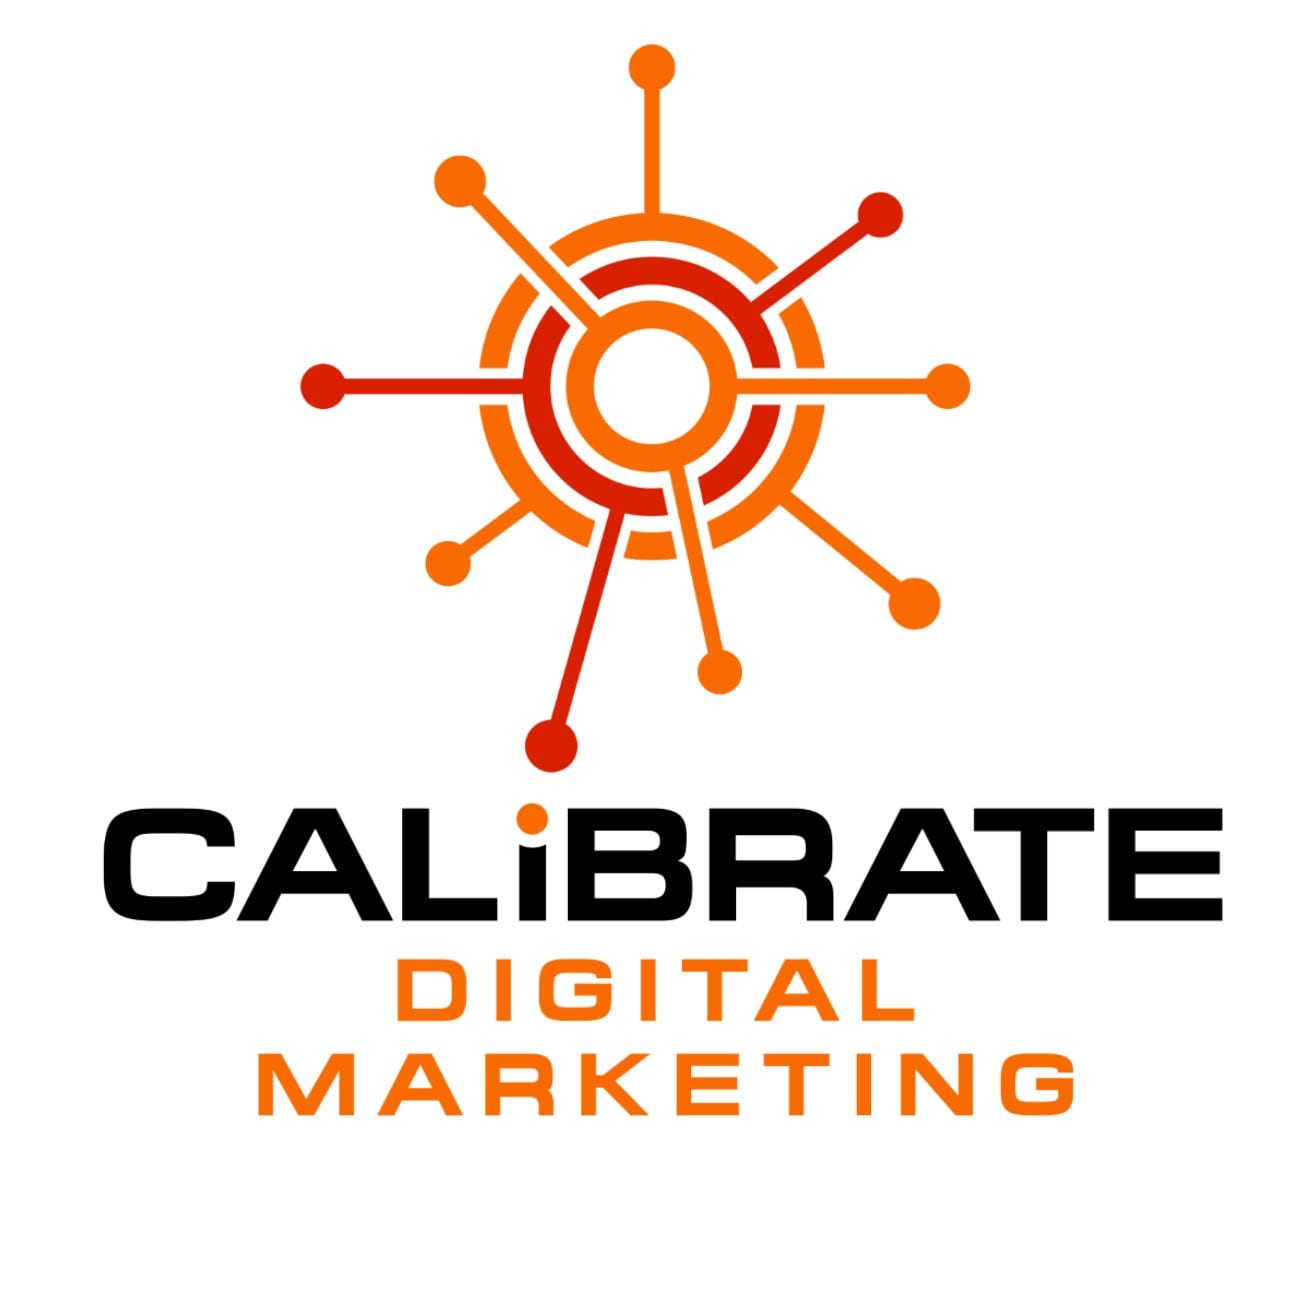 (c) Calibratedigitalmarketing.com